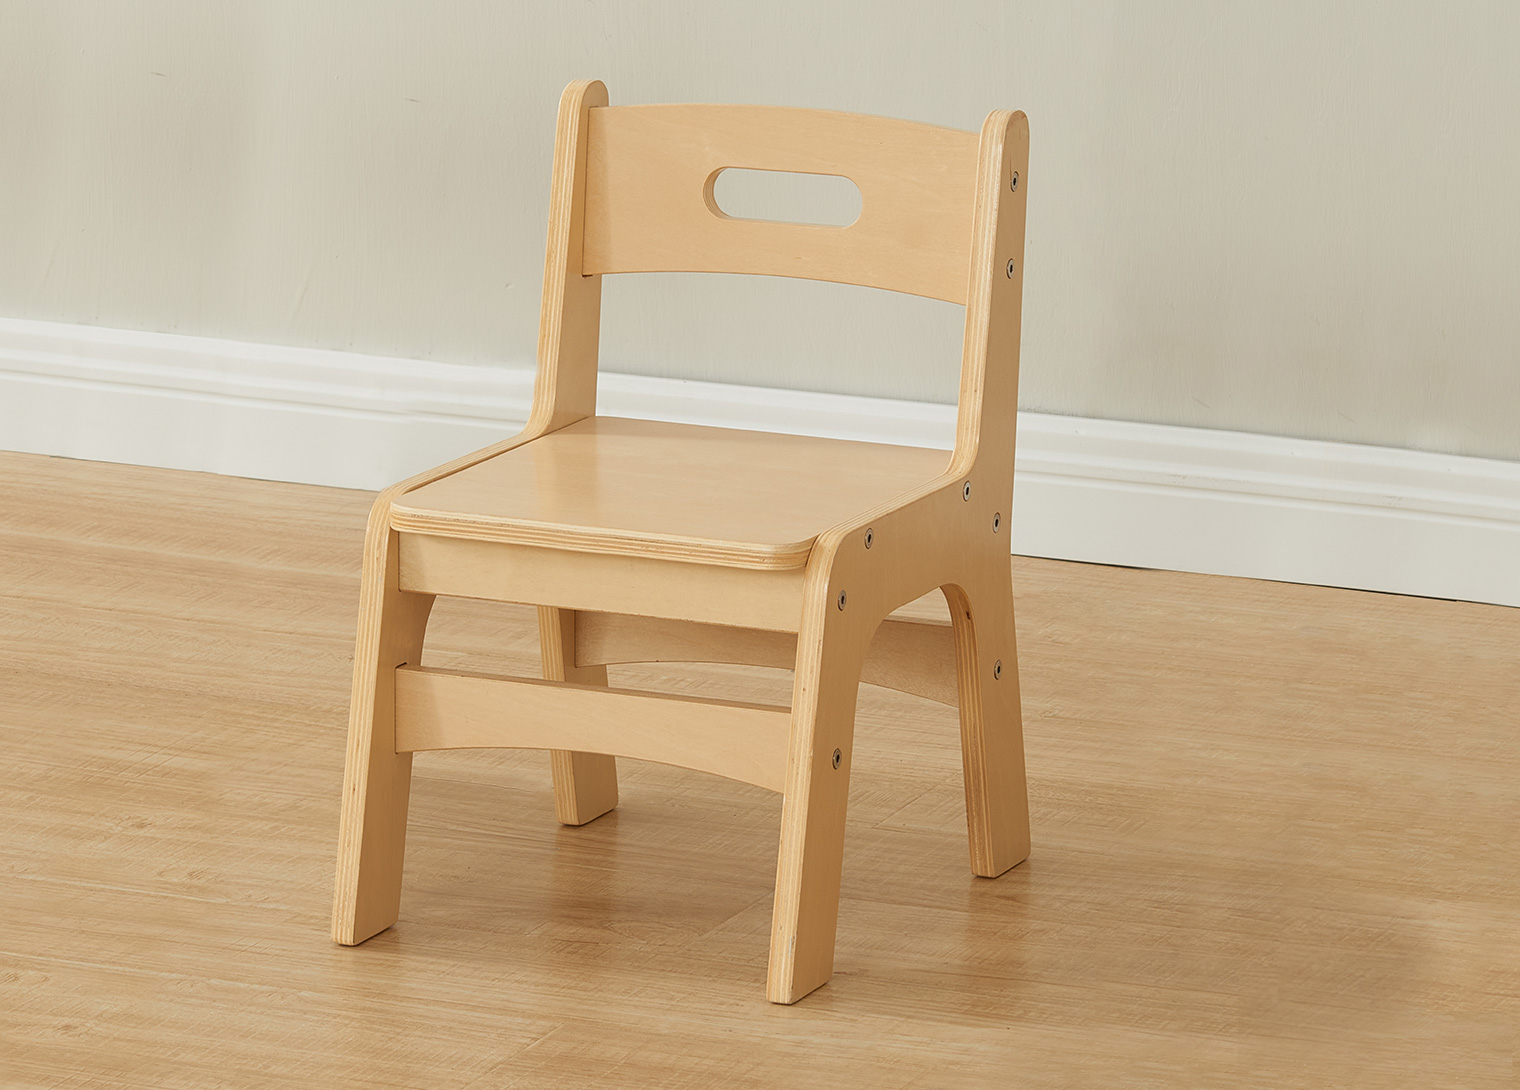 250H Duplex Wooden Chair - Natural